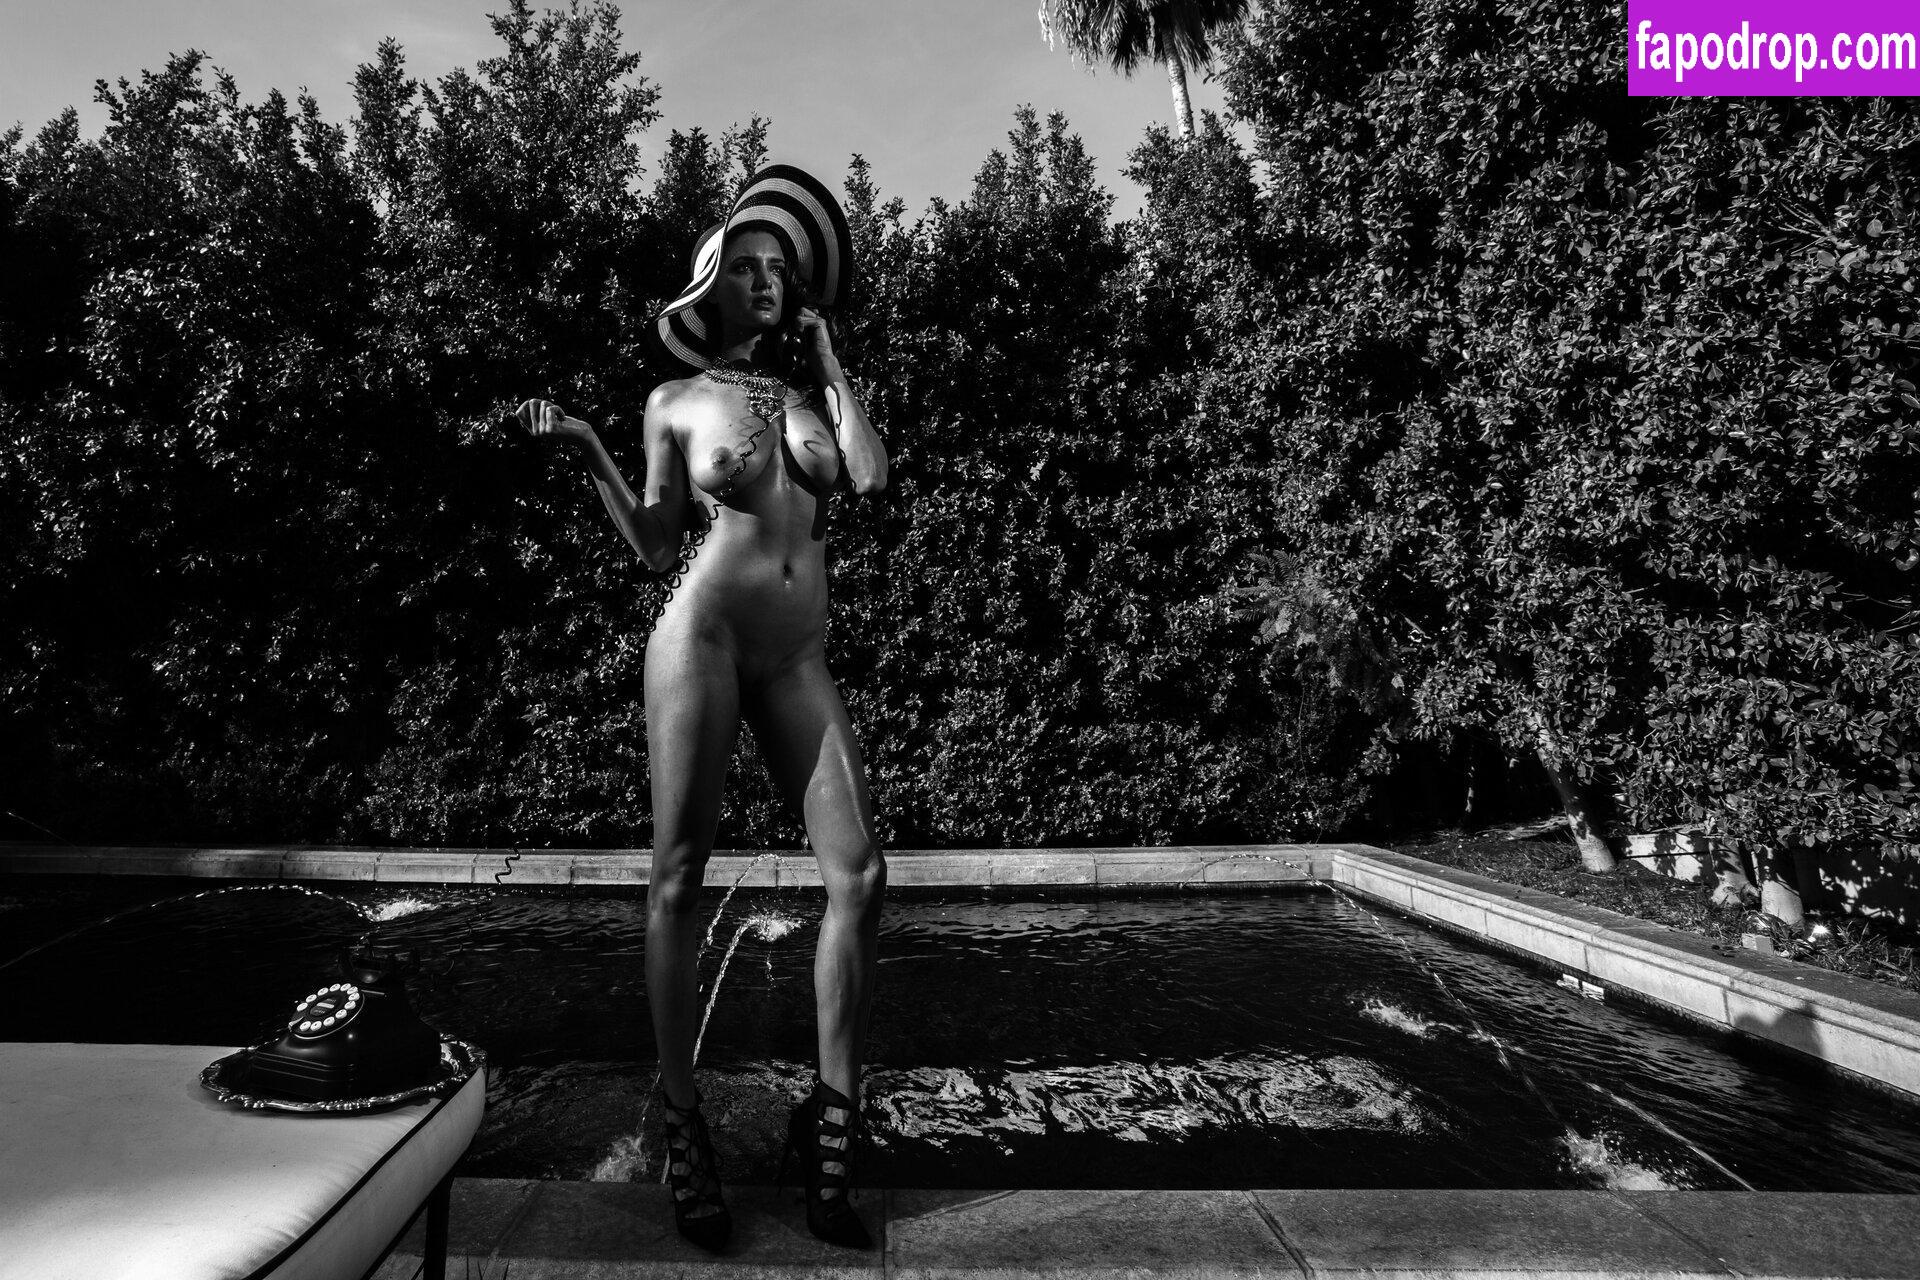 Alyssa Arce / miss_alyssaarce / missalyssaarce leak of nude photo #0480 from OnlyFans or Patreon